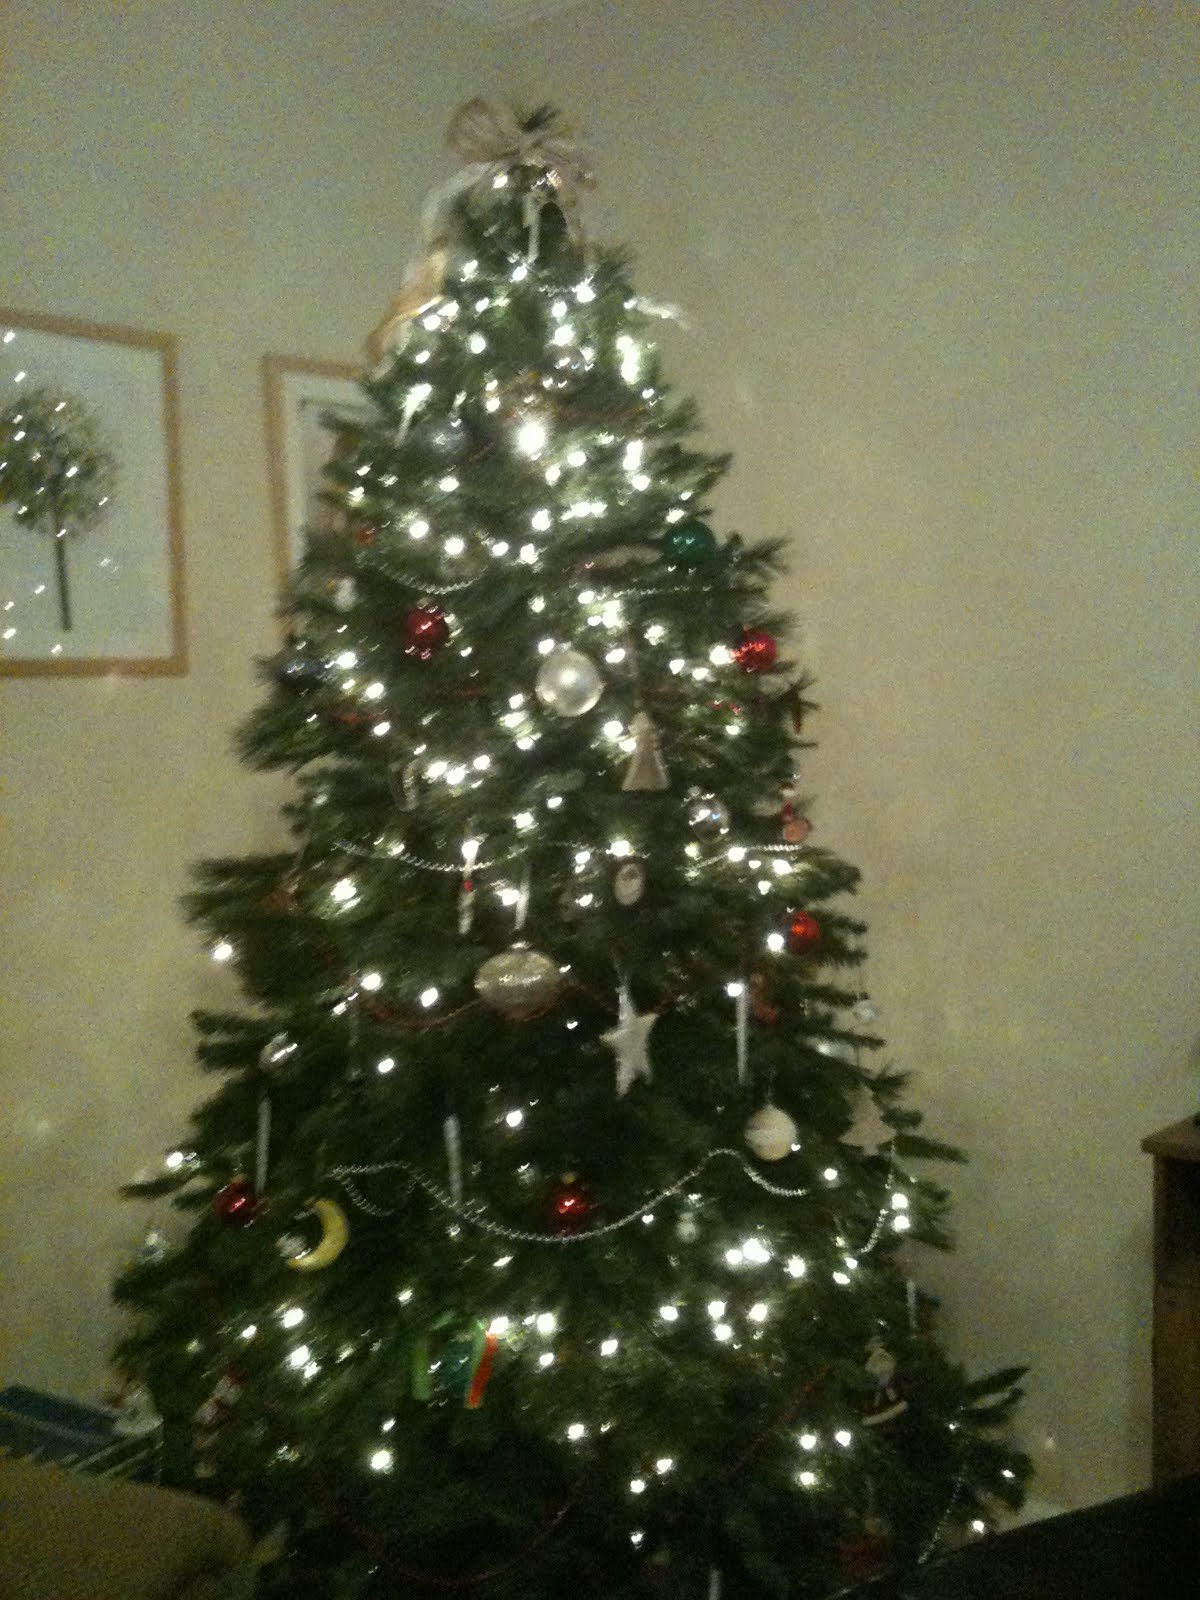 http://2.bp.blogspot.com/_XeJcXX_Fgbc/TQw56GPXGdI/AAAAAAAAAI8/_y33ku88kRU/s1600/Valerie+Christmas+Tree.jpeg